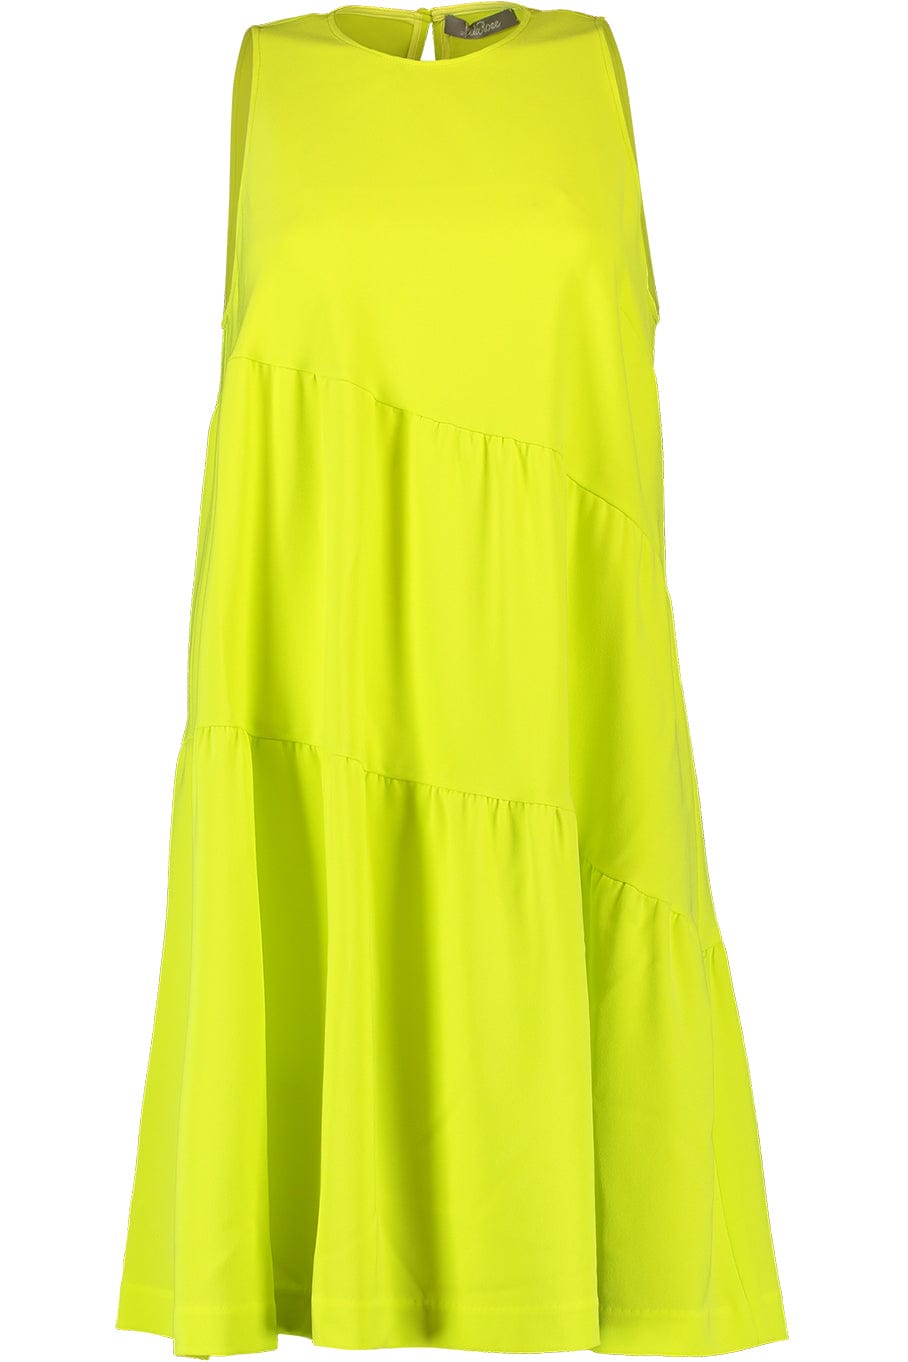 Tiered Tunic Dress - Citrine CLOTHINGDRESSCASUAL LELA ROSE   